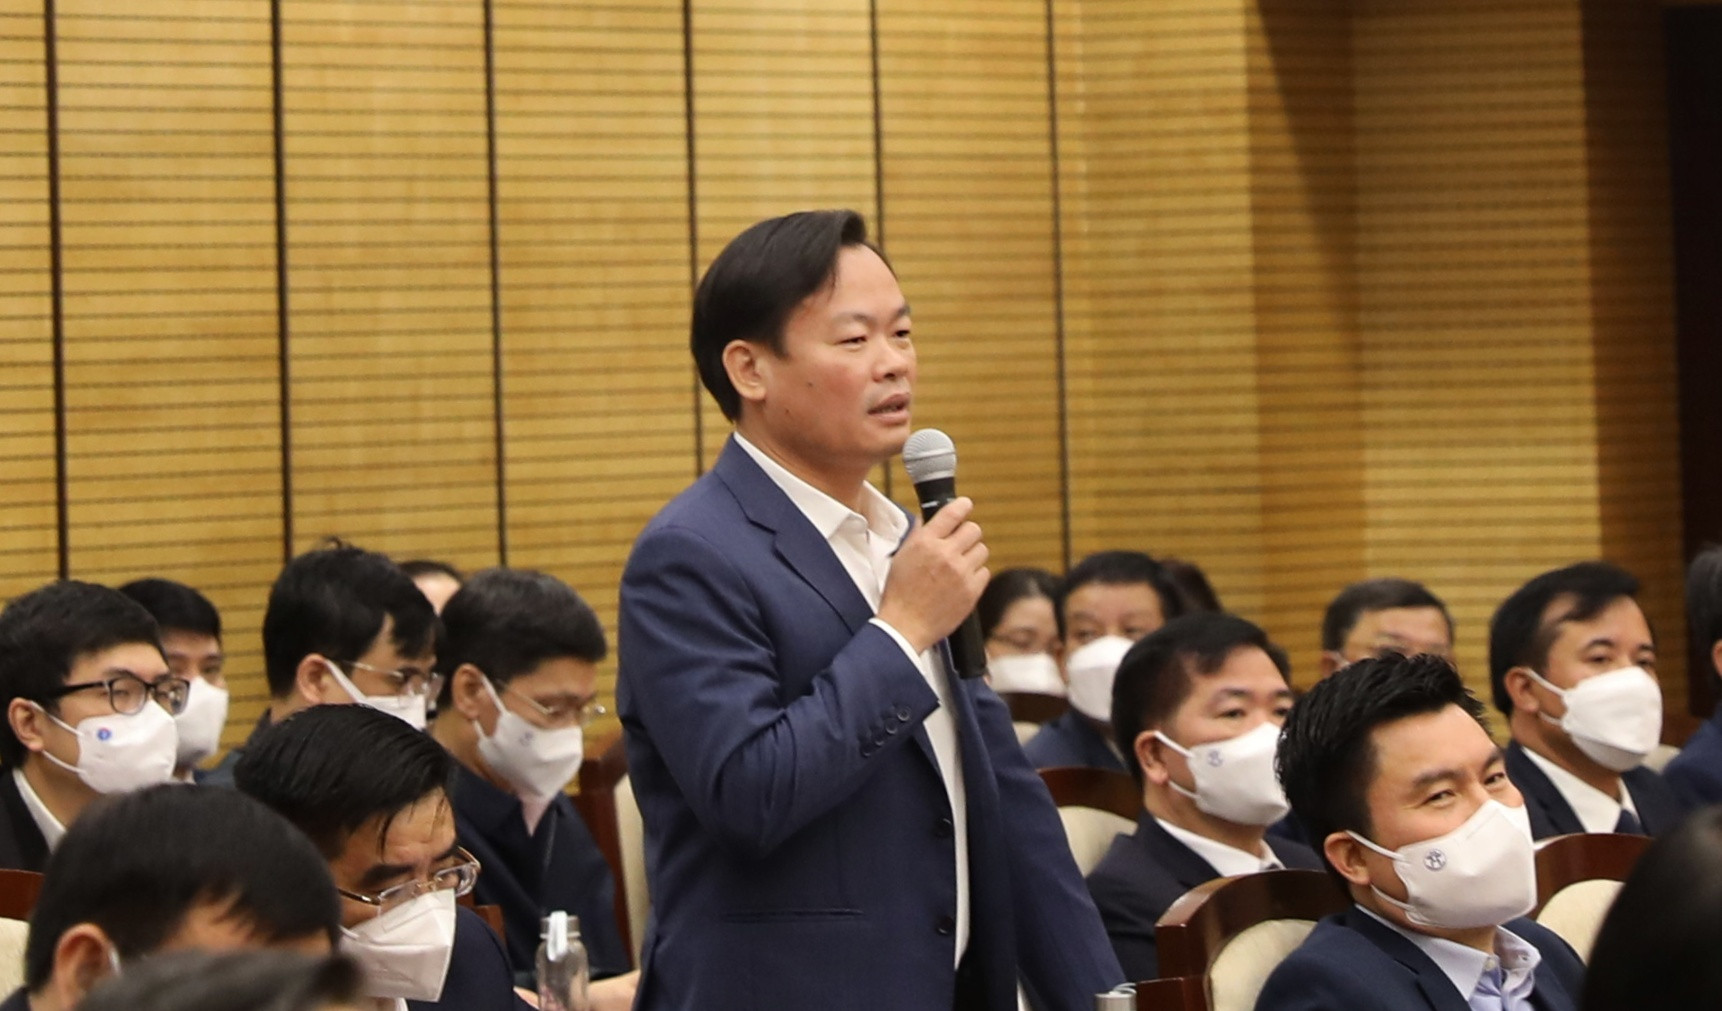 Hà Nội: Quán karaoke mở chui giữa mùa dịch, Chủ tịch quận nói khó xử lý - 1